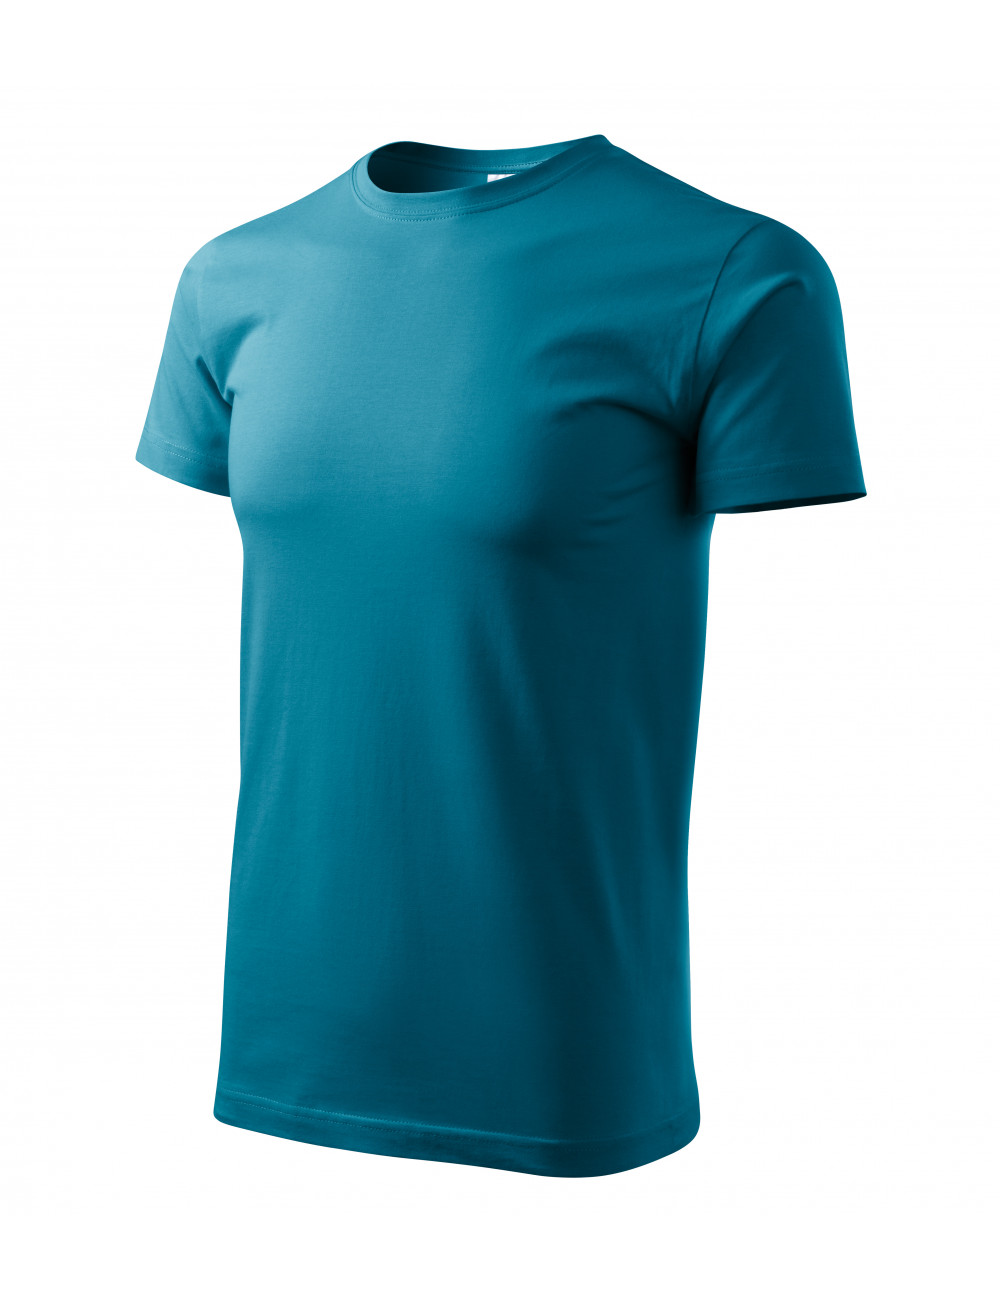 Unisex t-shirt heavy new 137 dark turquoise Adler Malfini